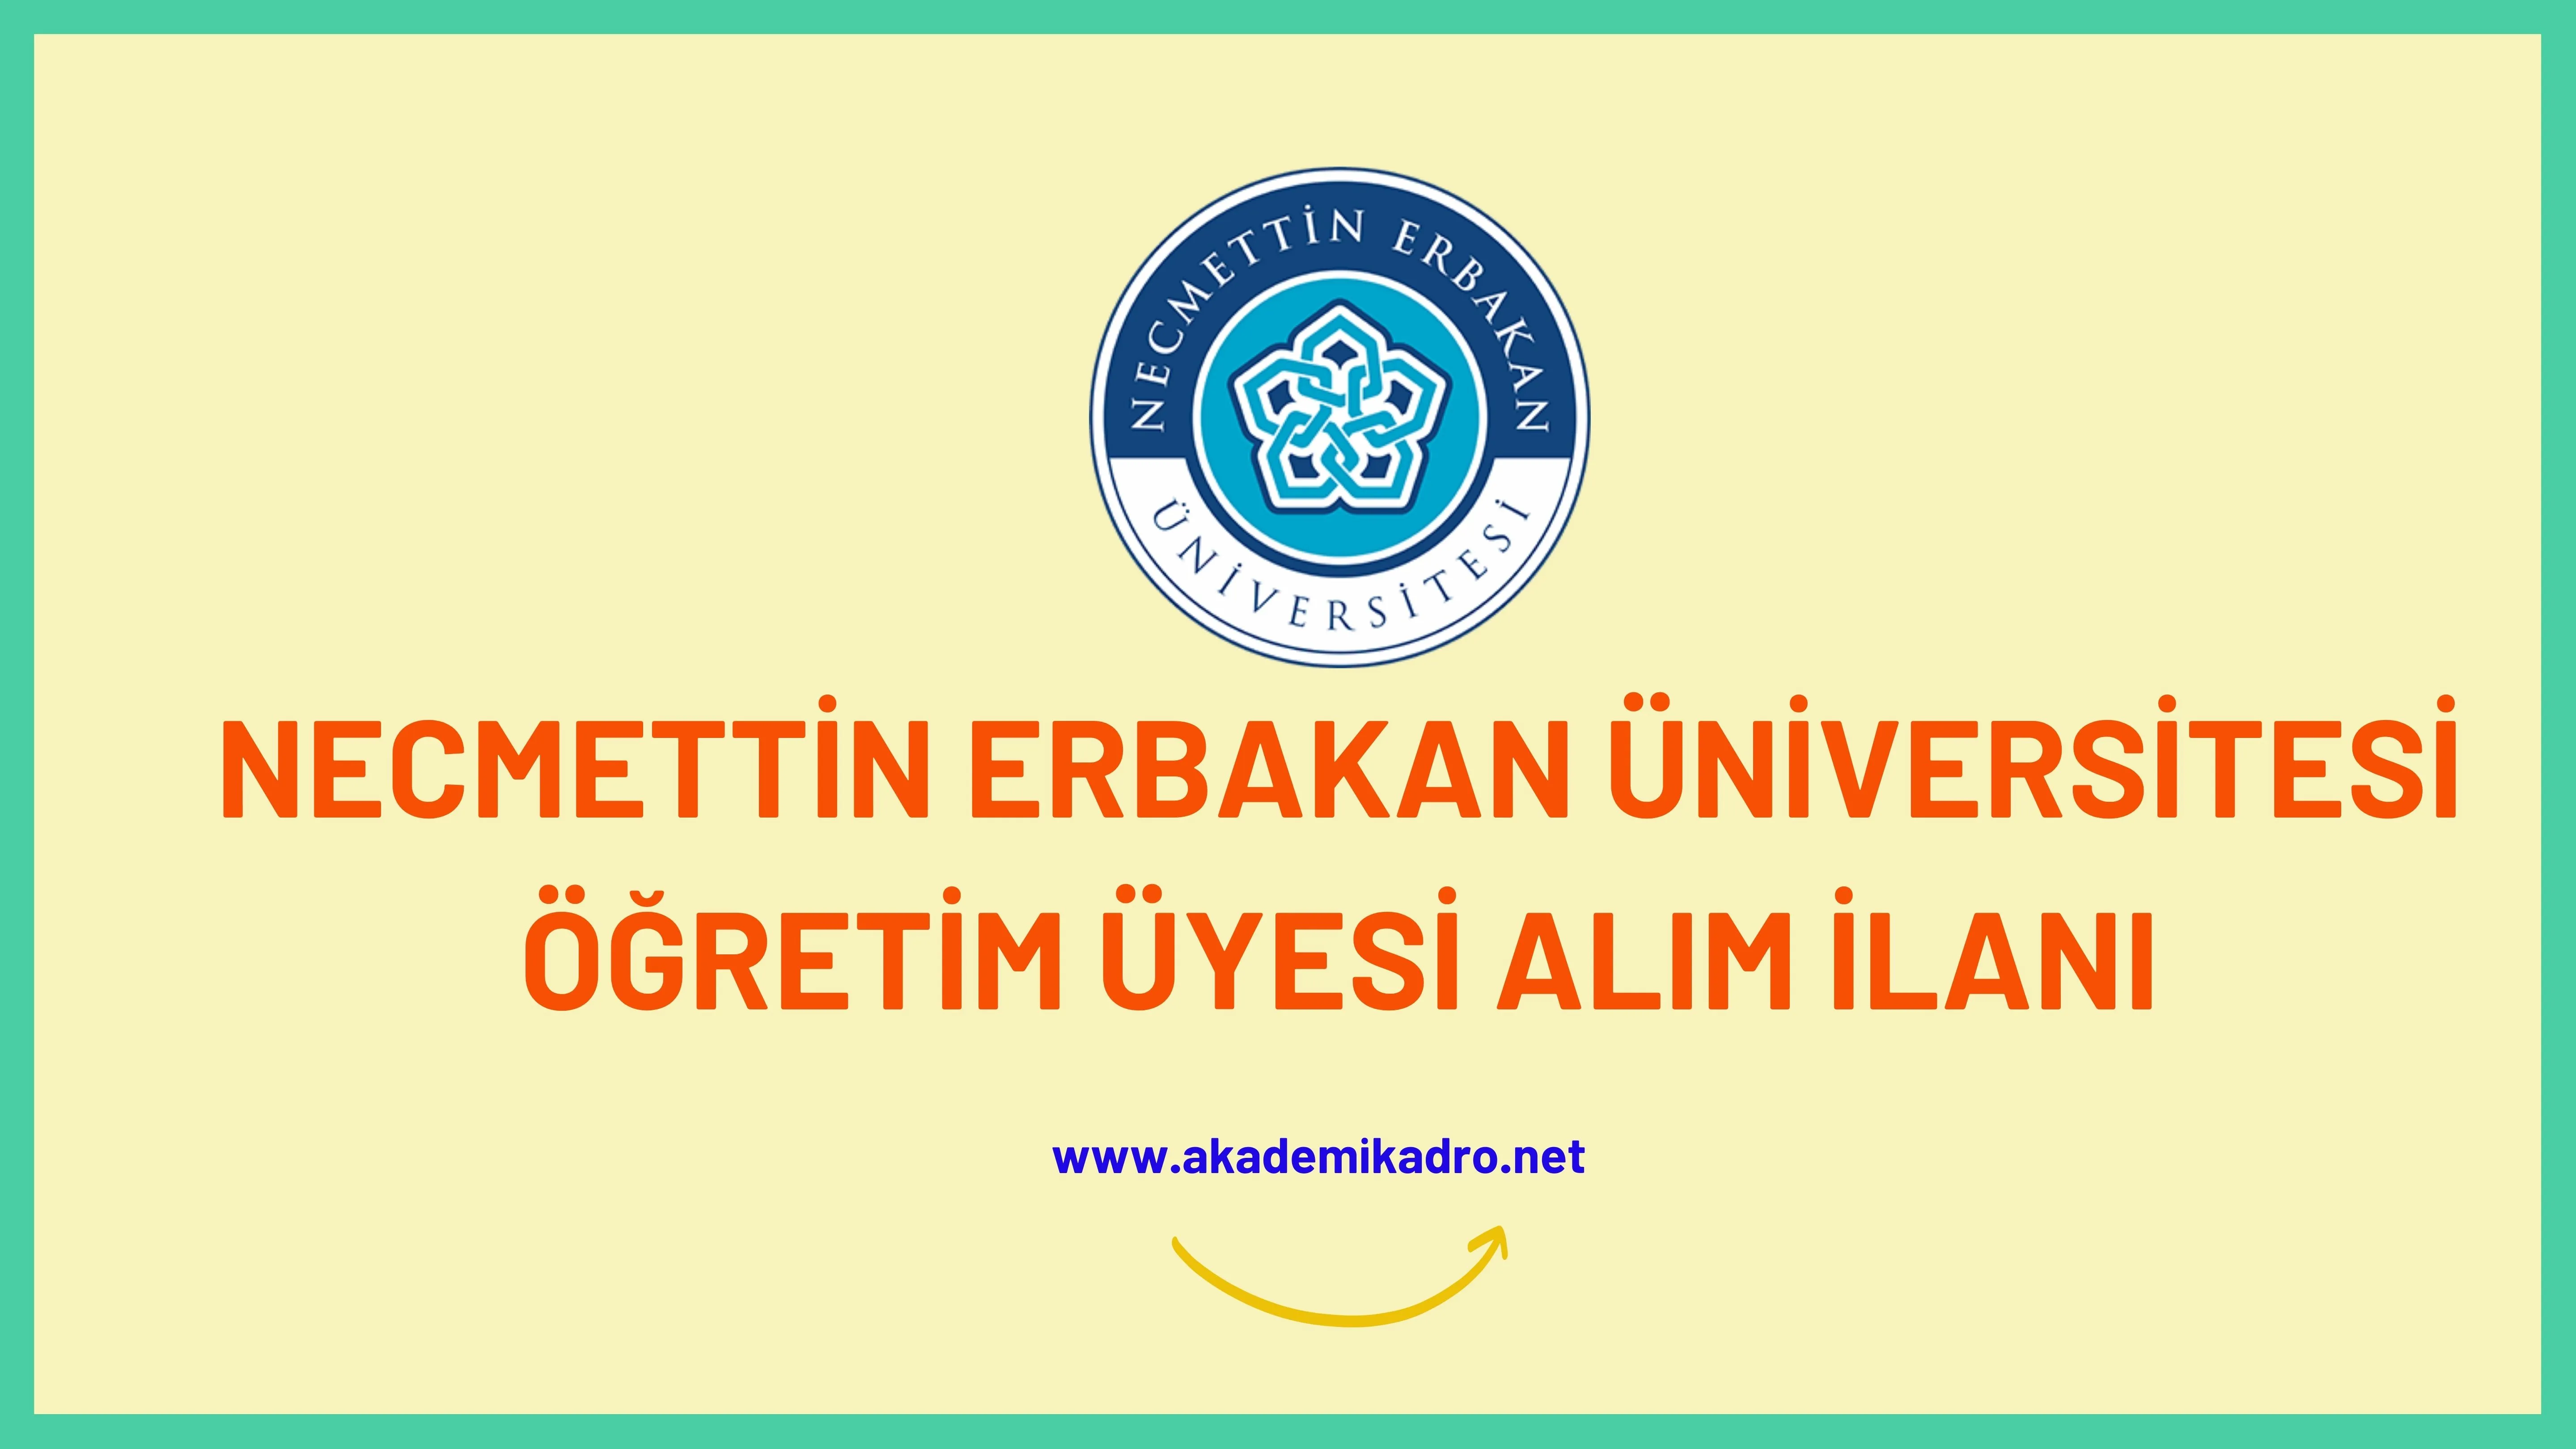 Necmettin Erbakan Üniversitesi birçok alandan 57 Öğretim üyesi alacak.